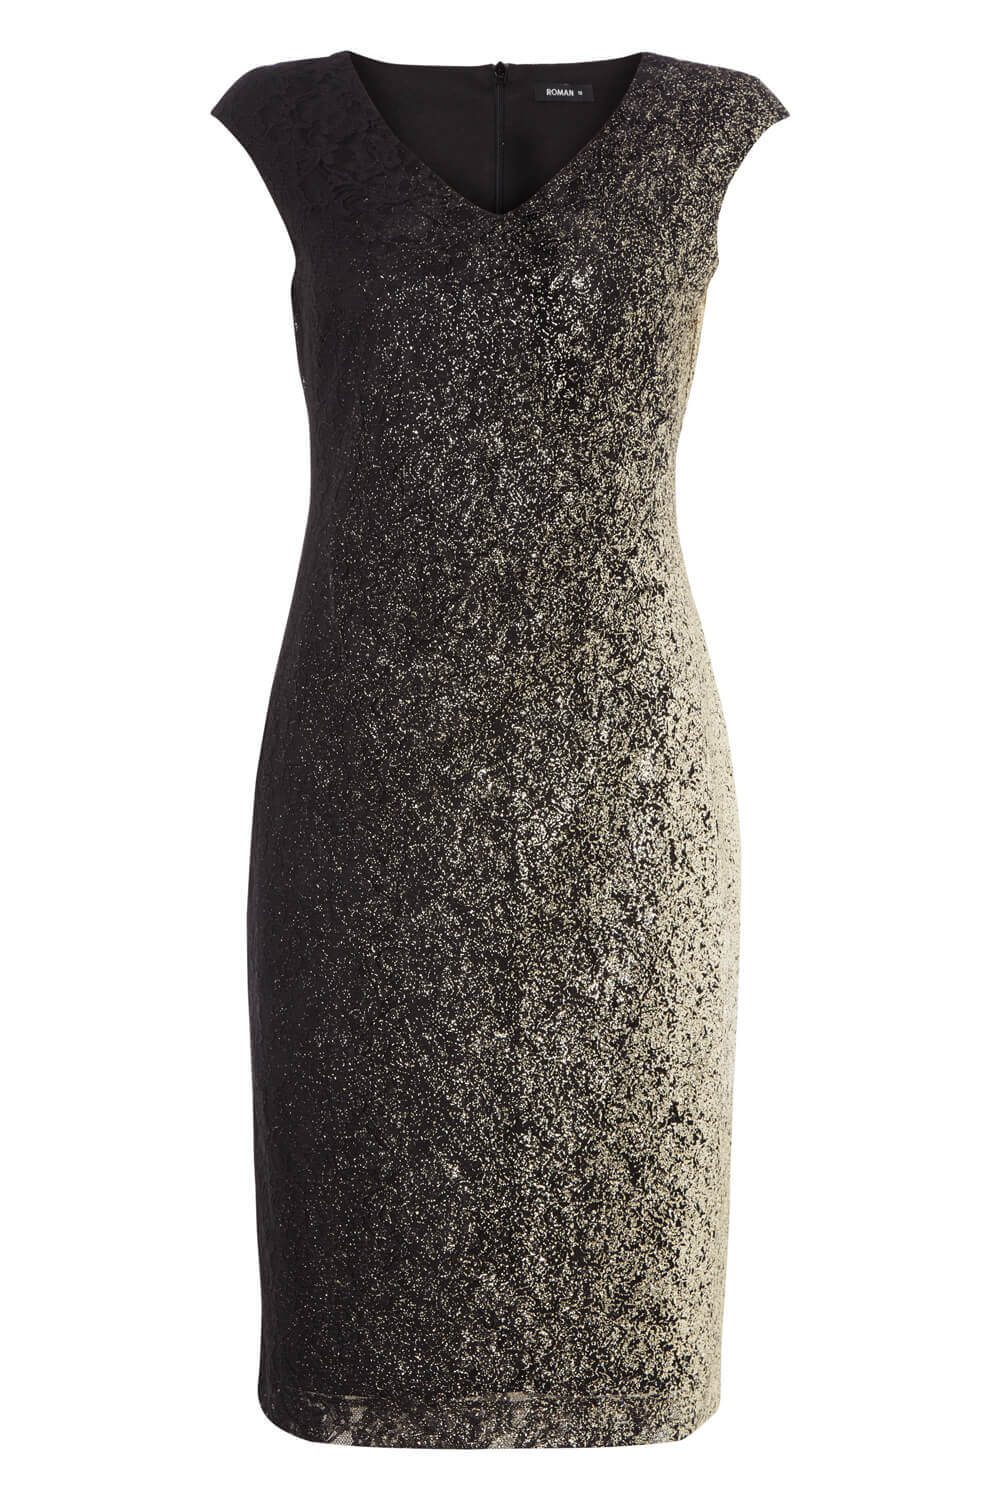 Gold V-Neck Ombre Shimmer Dress, Image 4 of 4